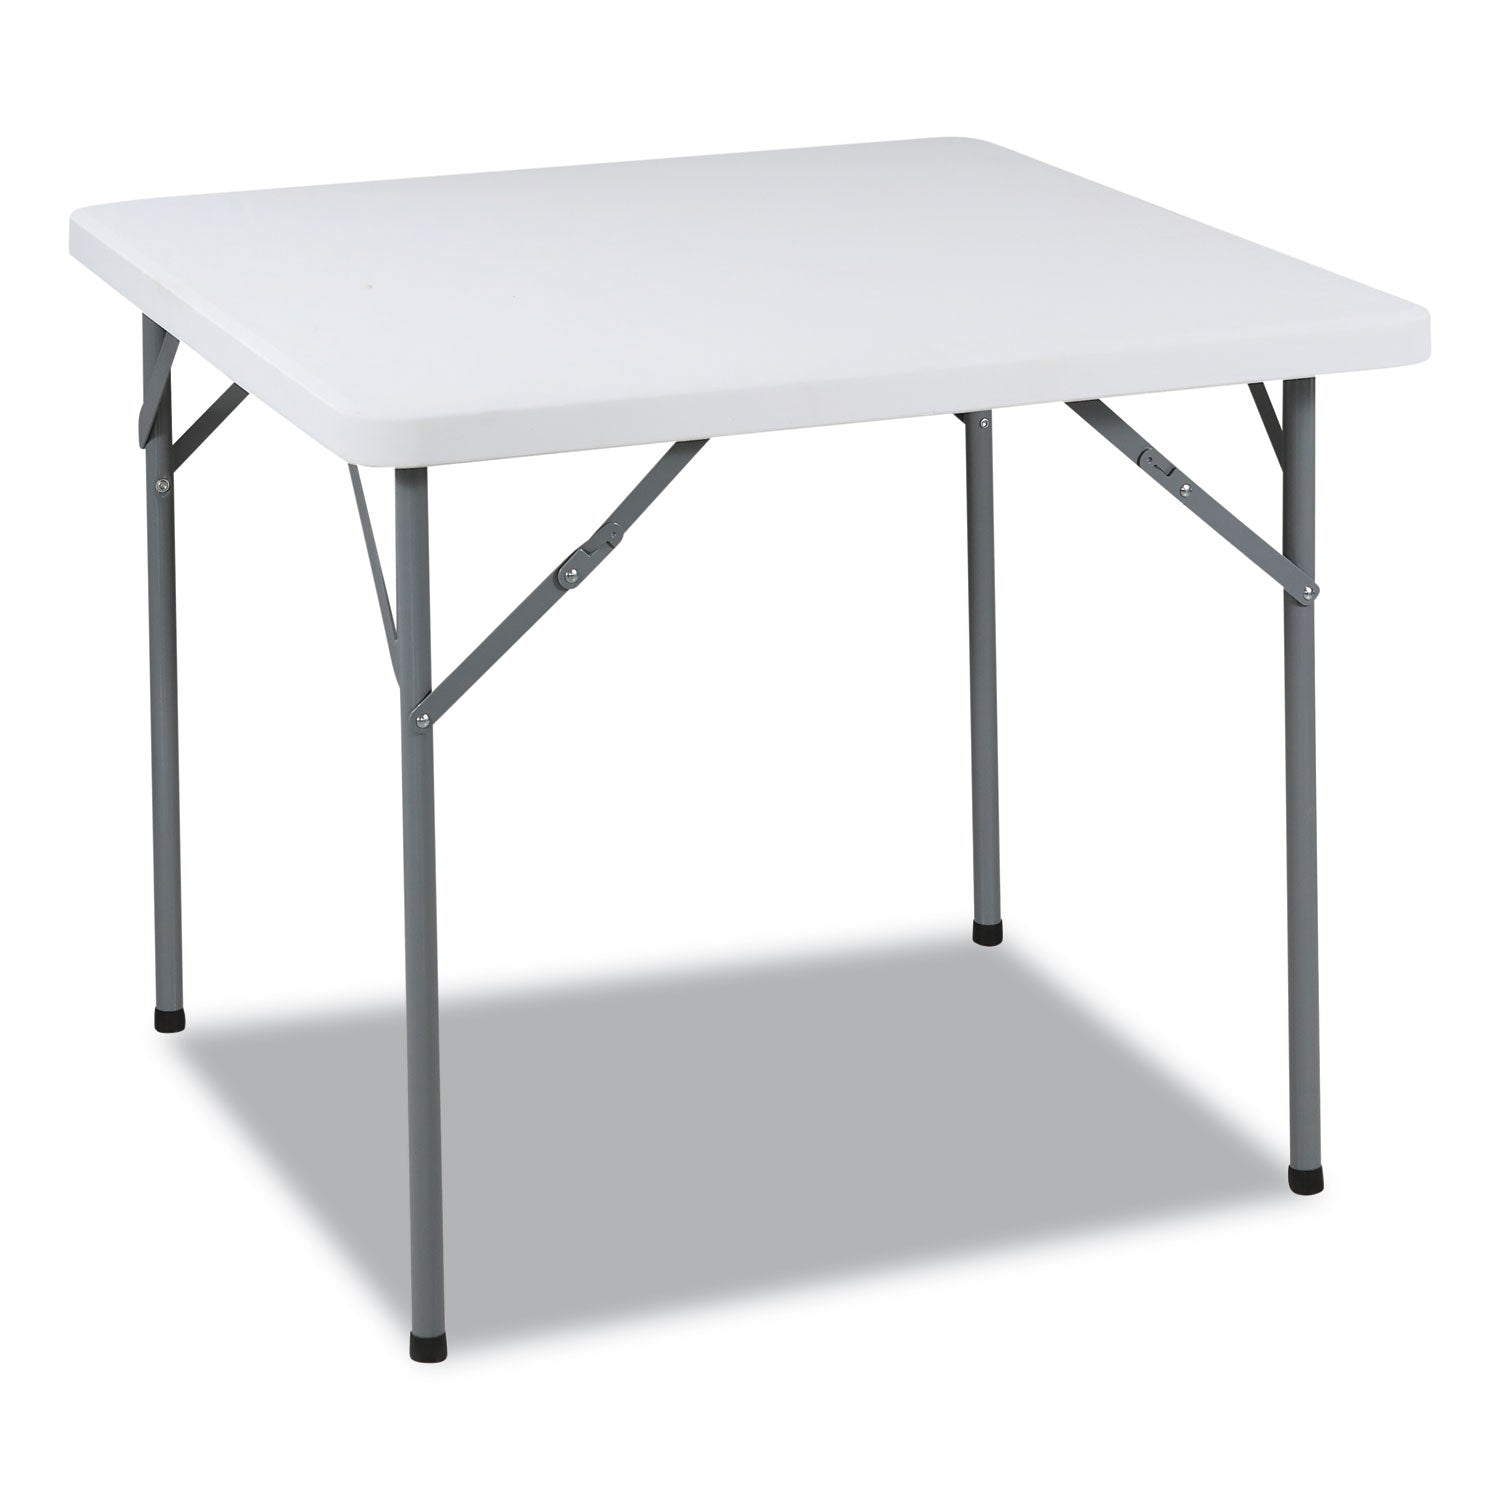 indestructable-classic-folding-table-square-34-x-34-x-29-platinum-granite_ice65253 - 1